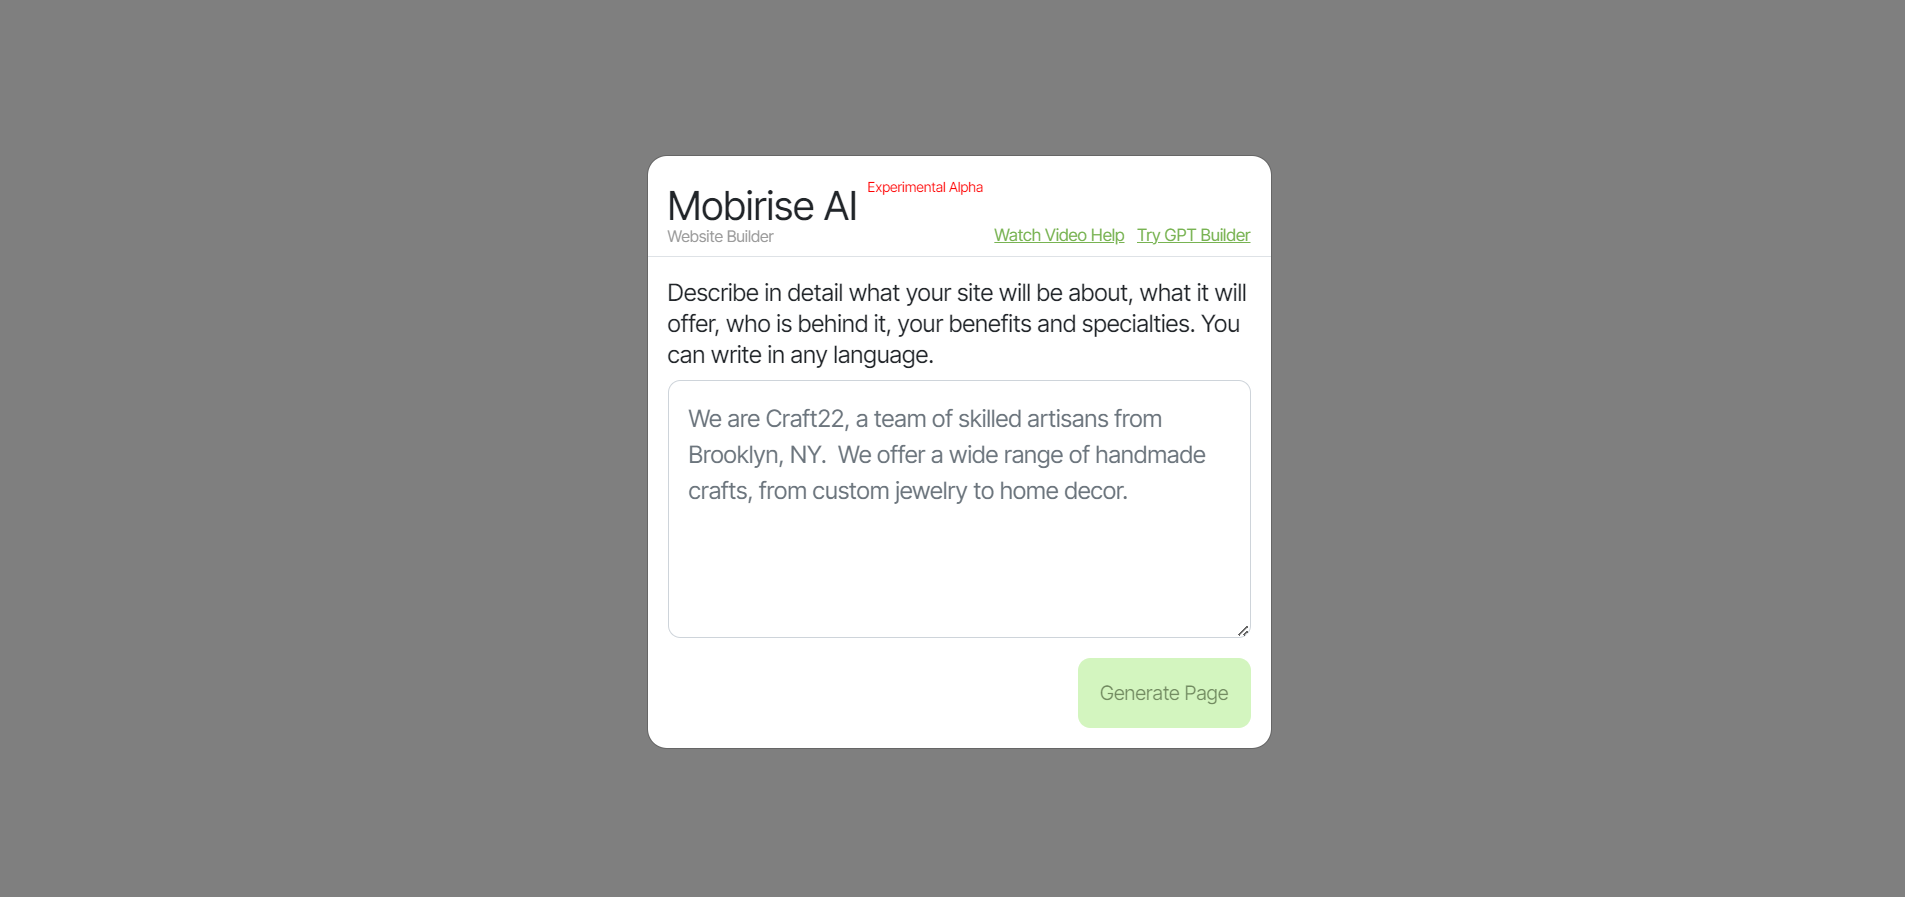 Mobirise AI feature